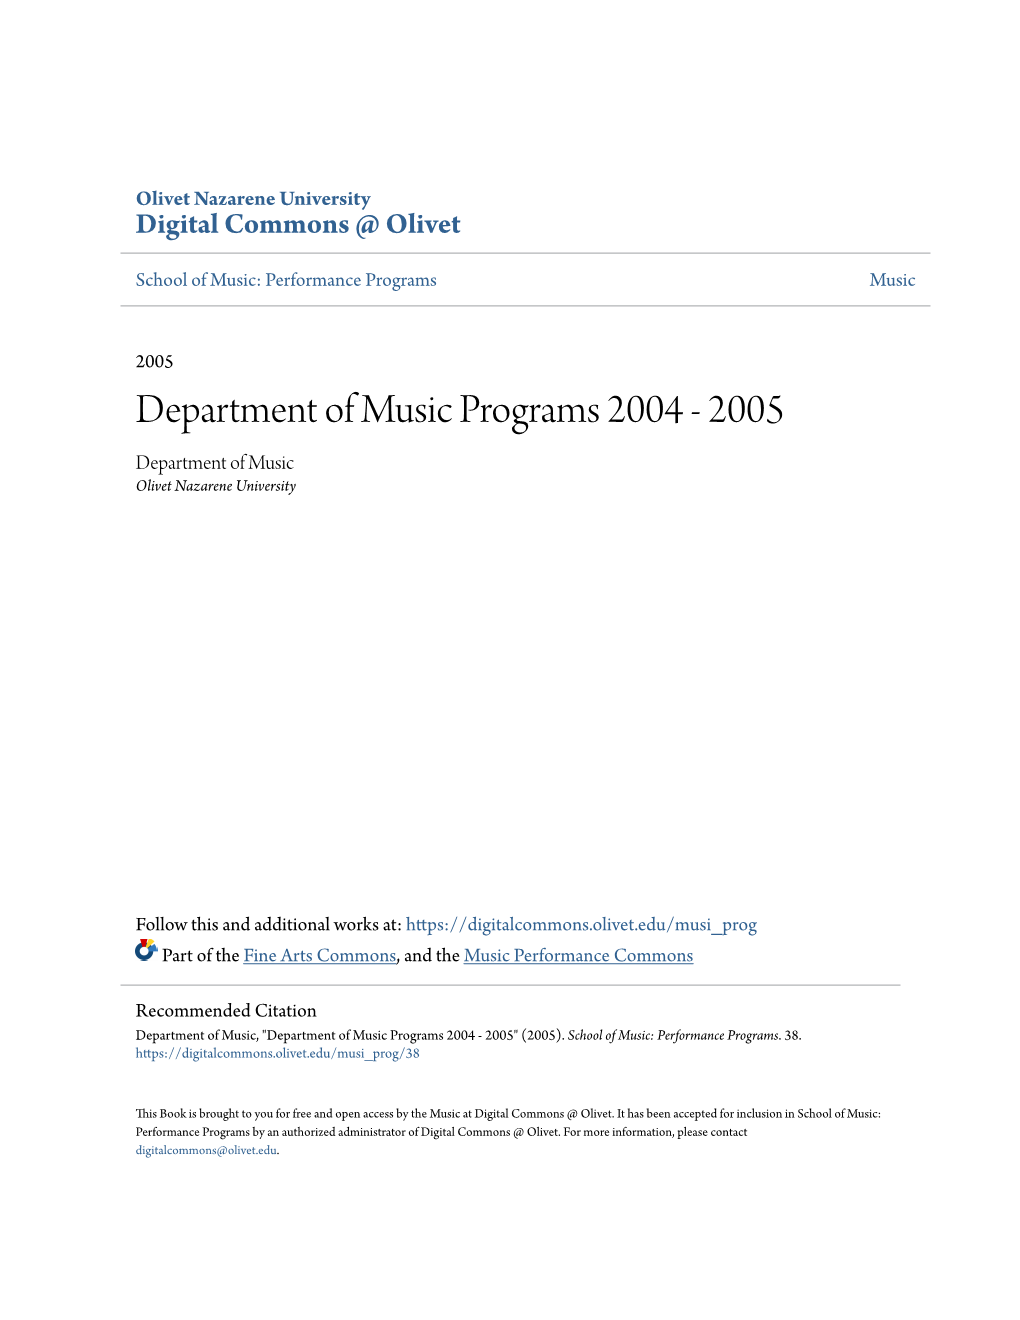 Department of Music Programs 2004 - 2005 Department of Music Olivet Nazarene University